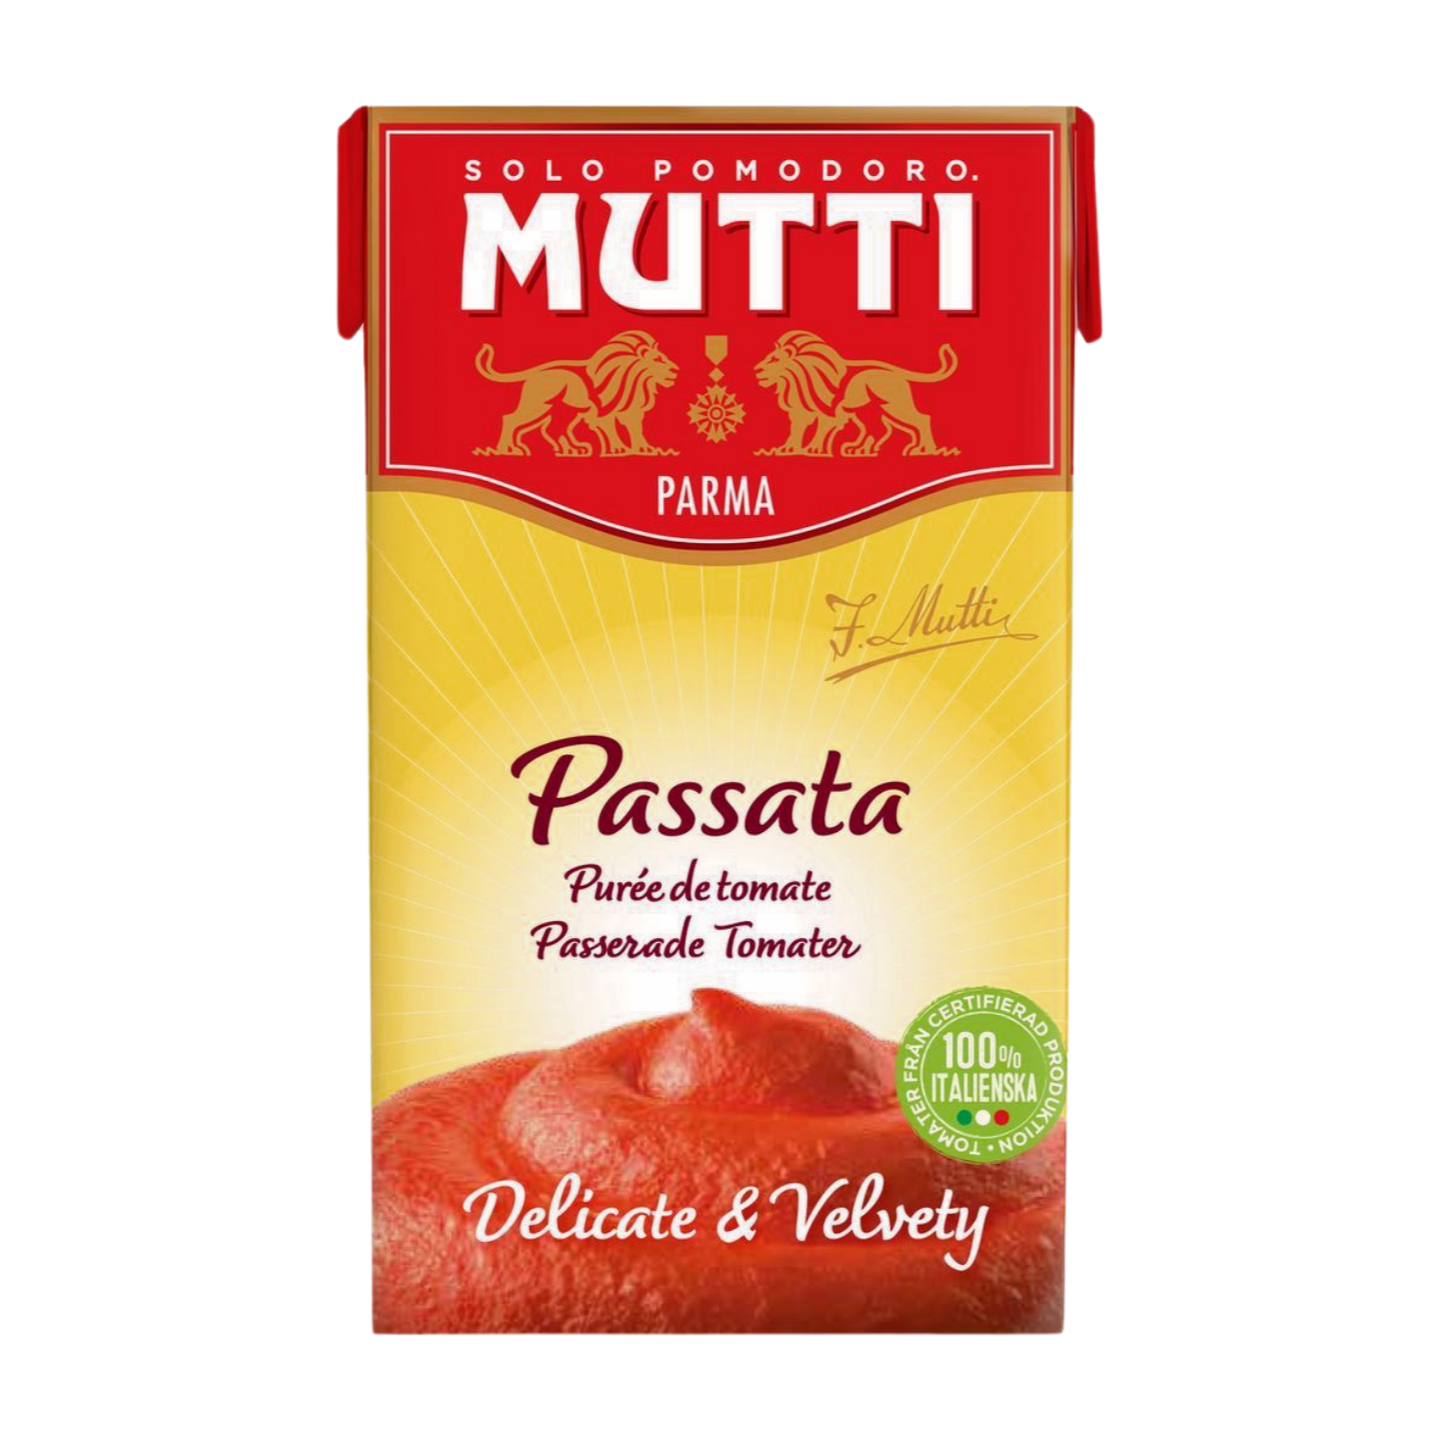 Mutti Passata in Carton (12x500g)